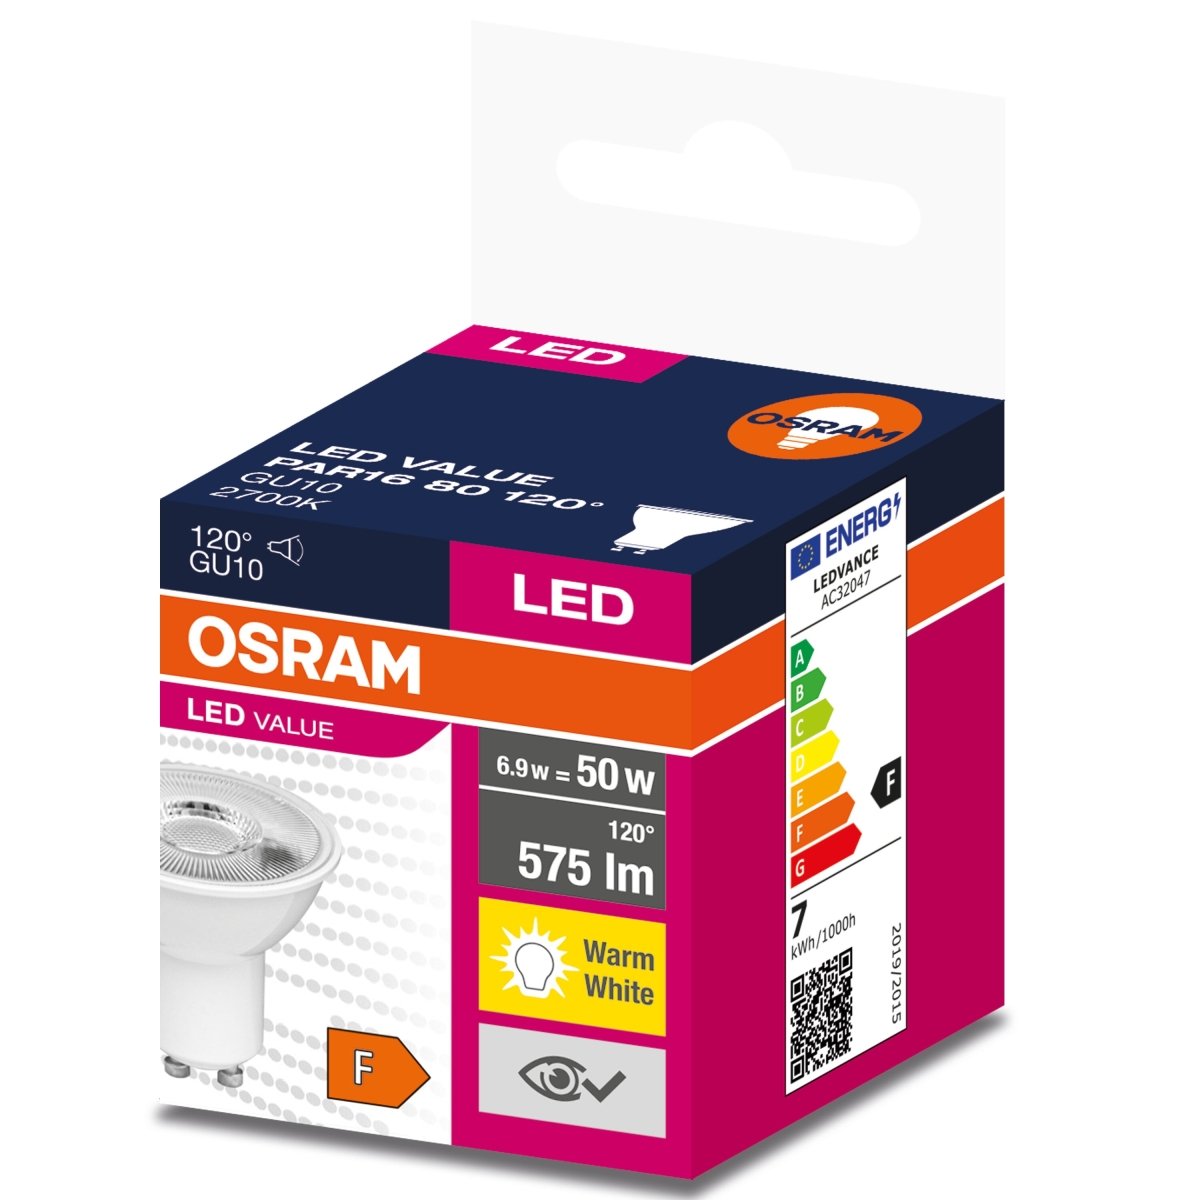 Żarówka LED GU10 6,9W LED VALUE OSRAM, odpowiednik 80W, 120 st., barwa ciepła, 1 szt. - eshop LEDVANCE 4058075198852